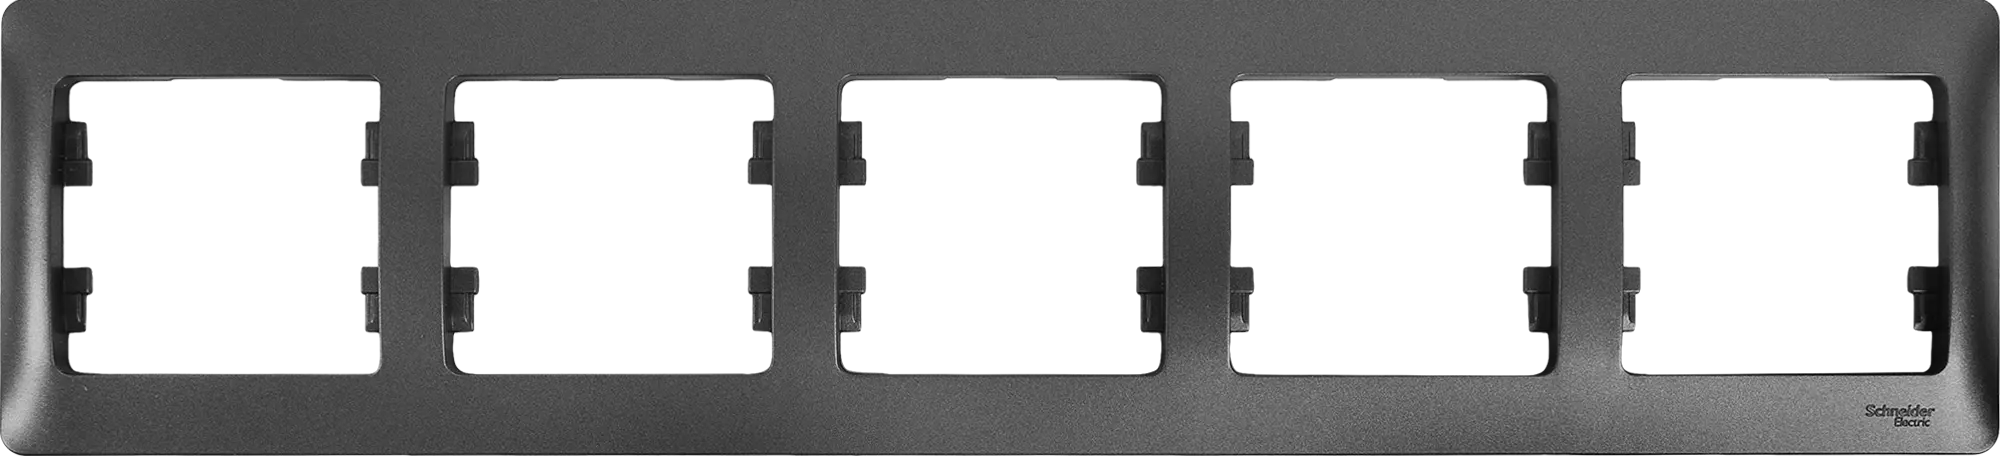 Рамка для розеток и выключателей Schneider Electric Glossa 5 постов пятерная цвет графит рамка на 4 поста графит w0042104 werkel